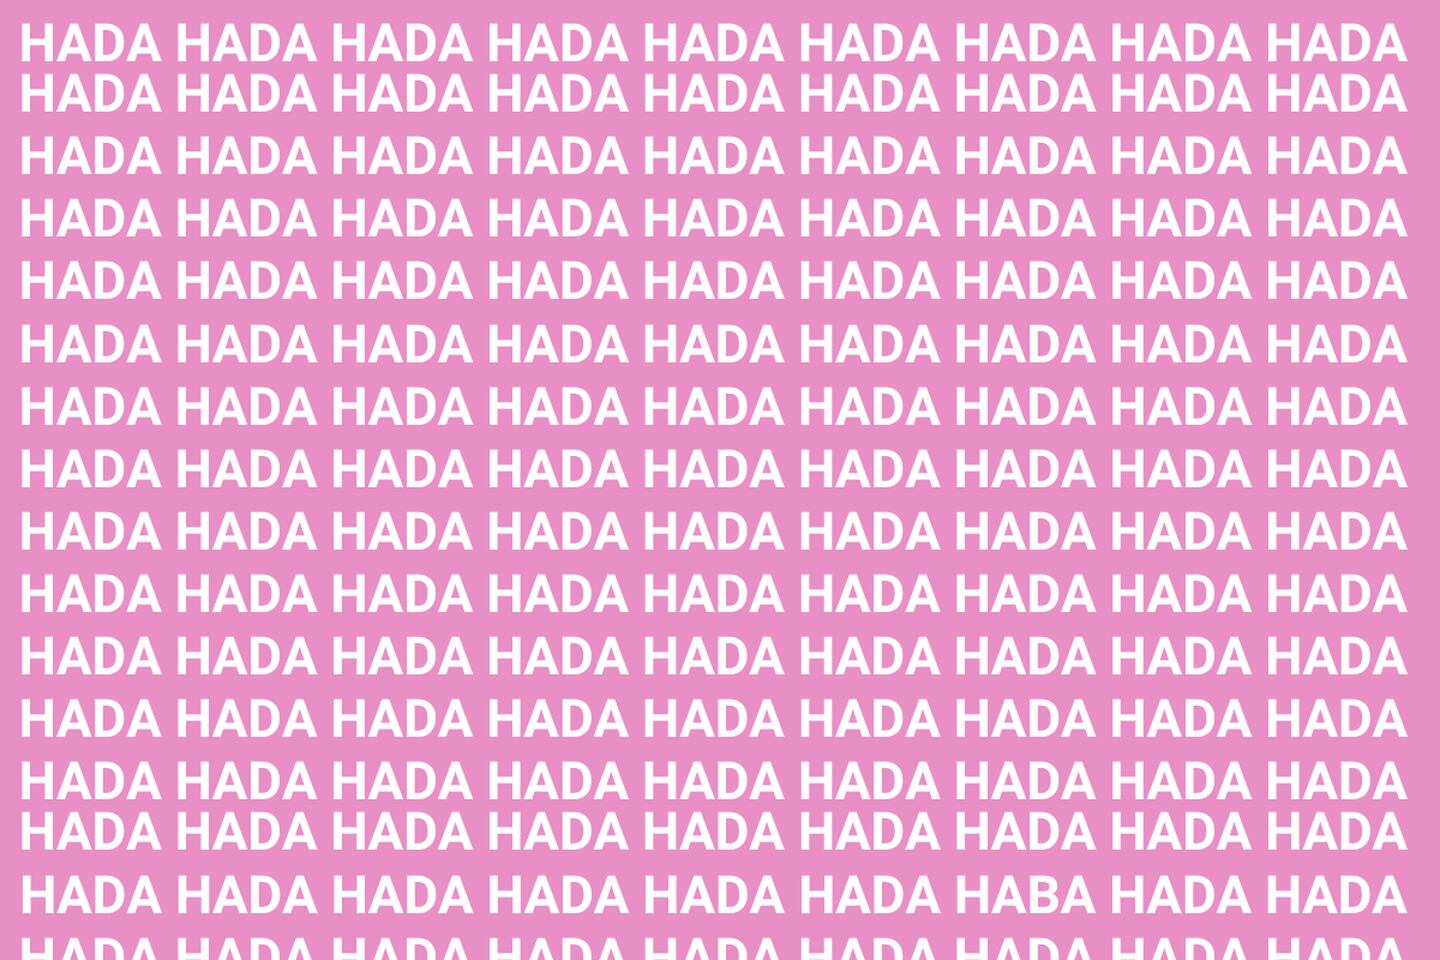 En este test visual hay muchas palabras "HADA", sin embargo, solo una dice "HABA".